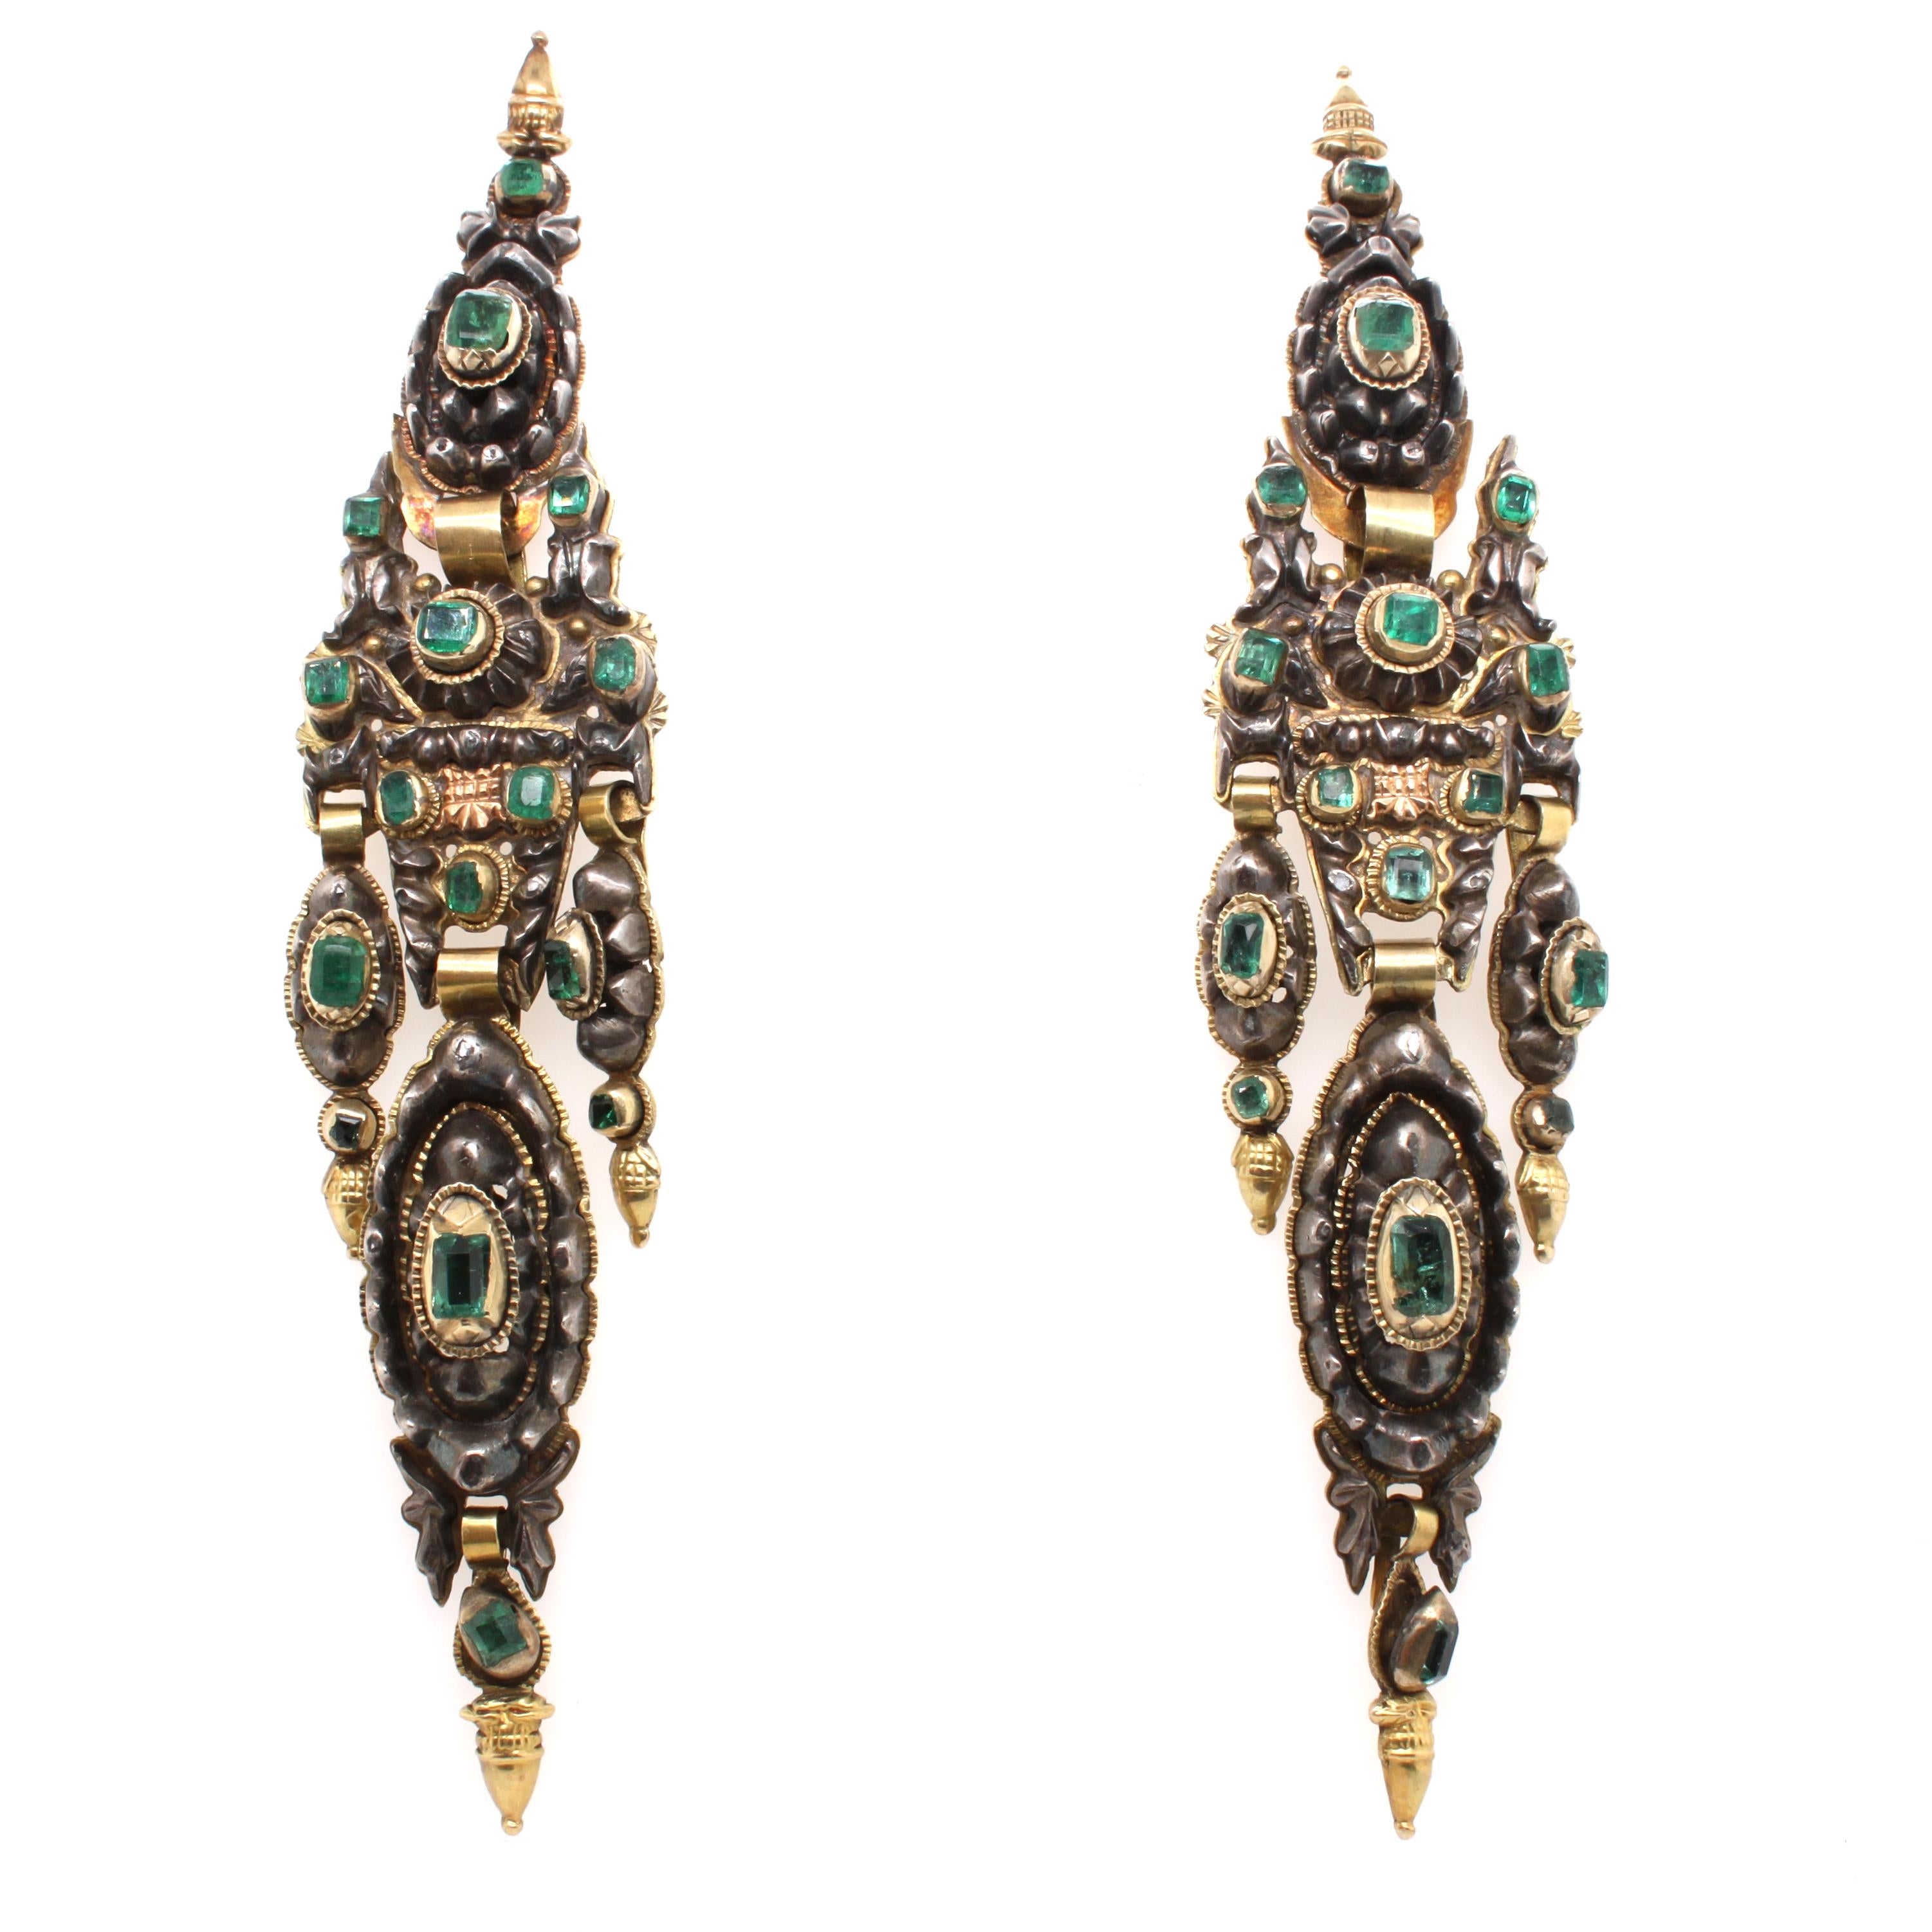 Antike iberische Smaragd-Ohrringe, ca. 18. Jahrhundert

Ein seltenes Paar antiker iberischer - portugiesischer Ohrringe aus Gelbgold und Silber, besetzt mit kolumbianischen Smaragden. Die Kronleuchter-Ohrringe haben mehrere bewegliche Glieder und